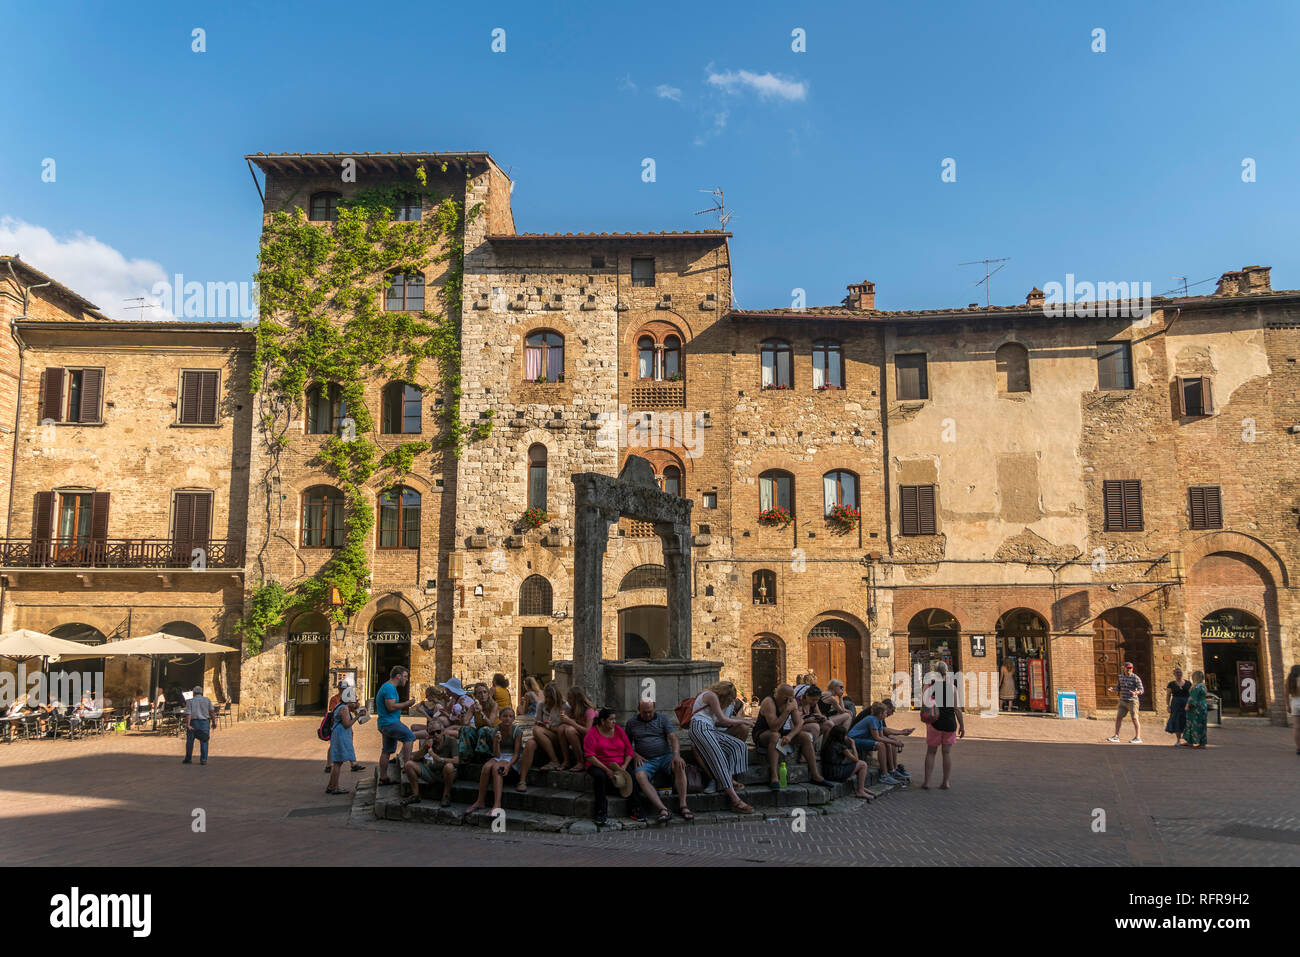 Piazza della cisterna im historischen Zentrum San Gimignano, Toskana, Italien  |   Piazza della cisterna square at the historic centre, San Gimignano, Stock Photo